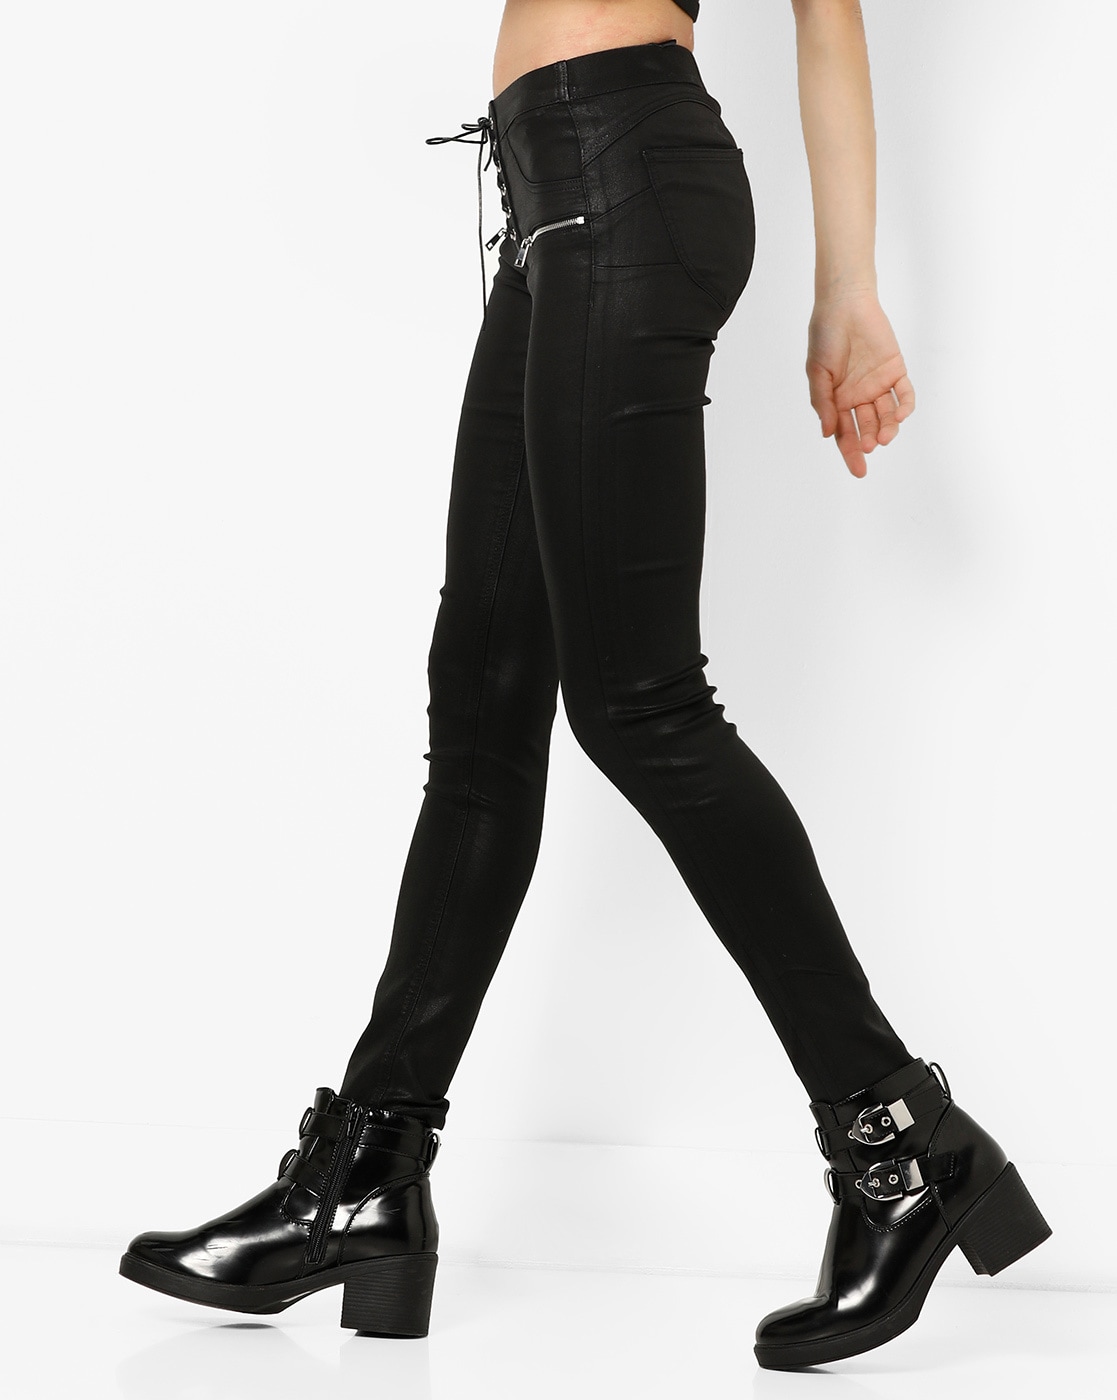 Buy Glossy Black Trousers  Pants for Women by TALLY WEiJL Online  Ajiocom